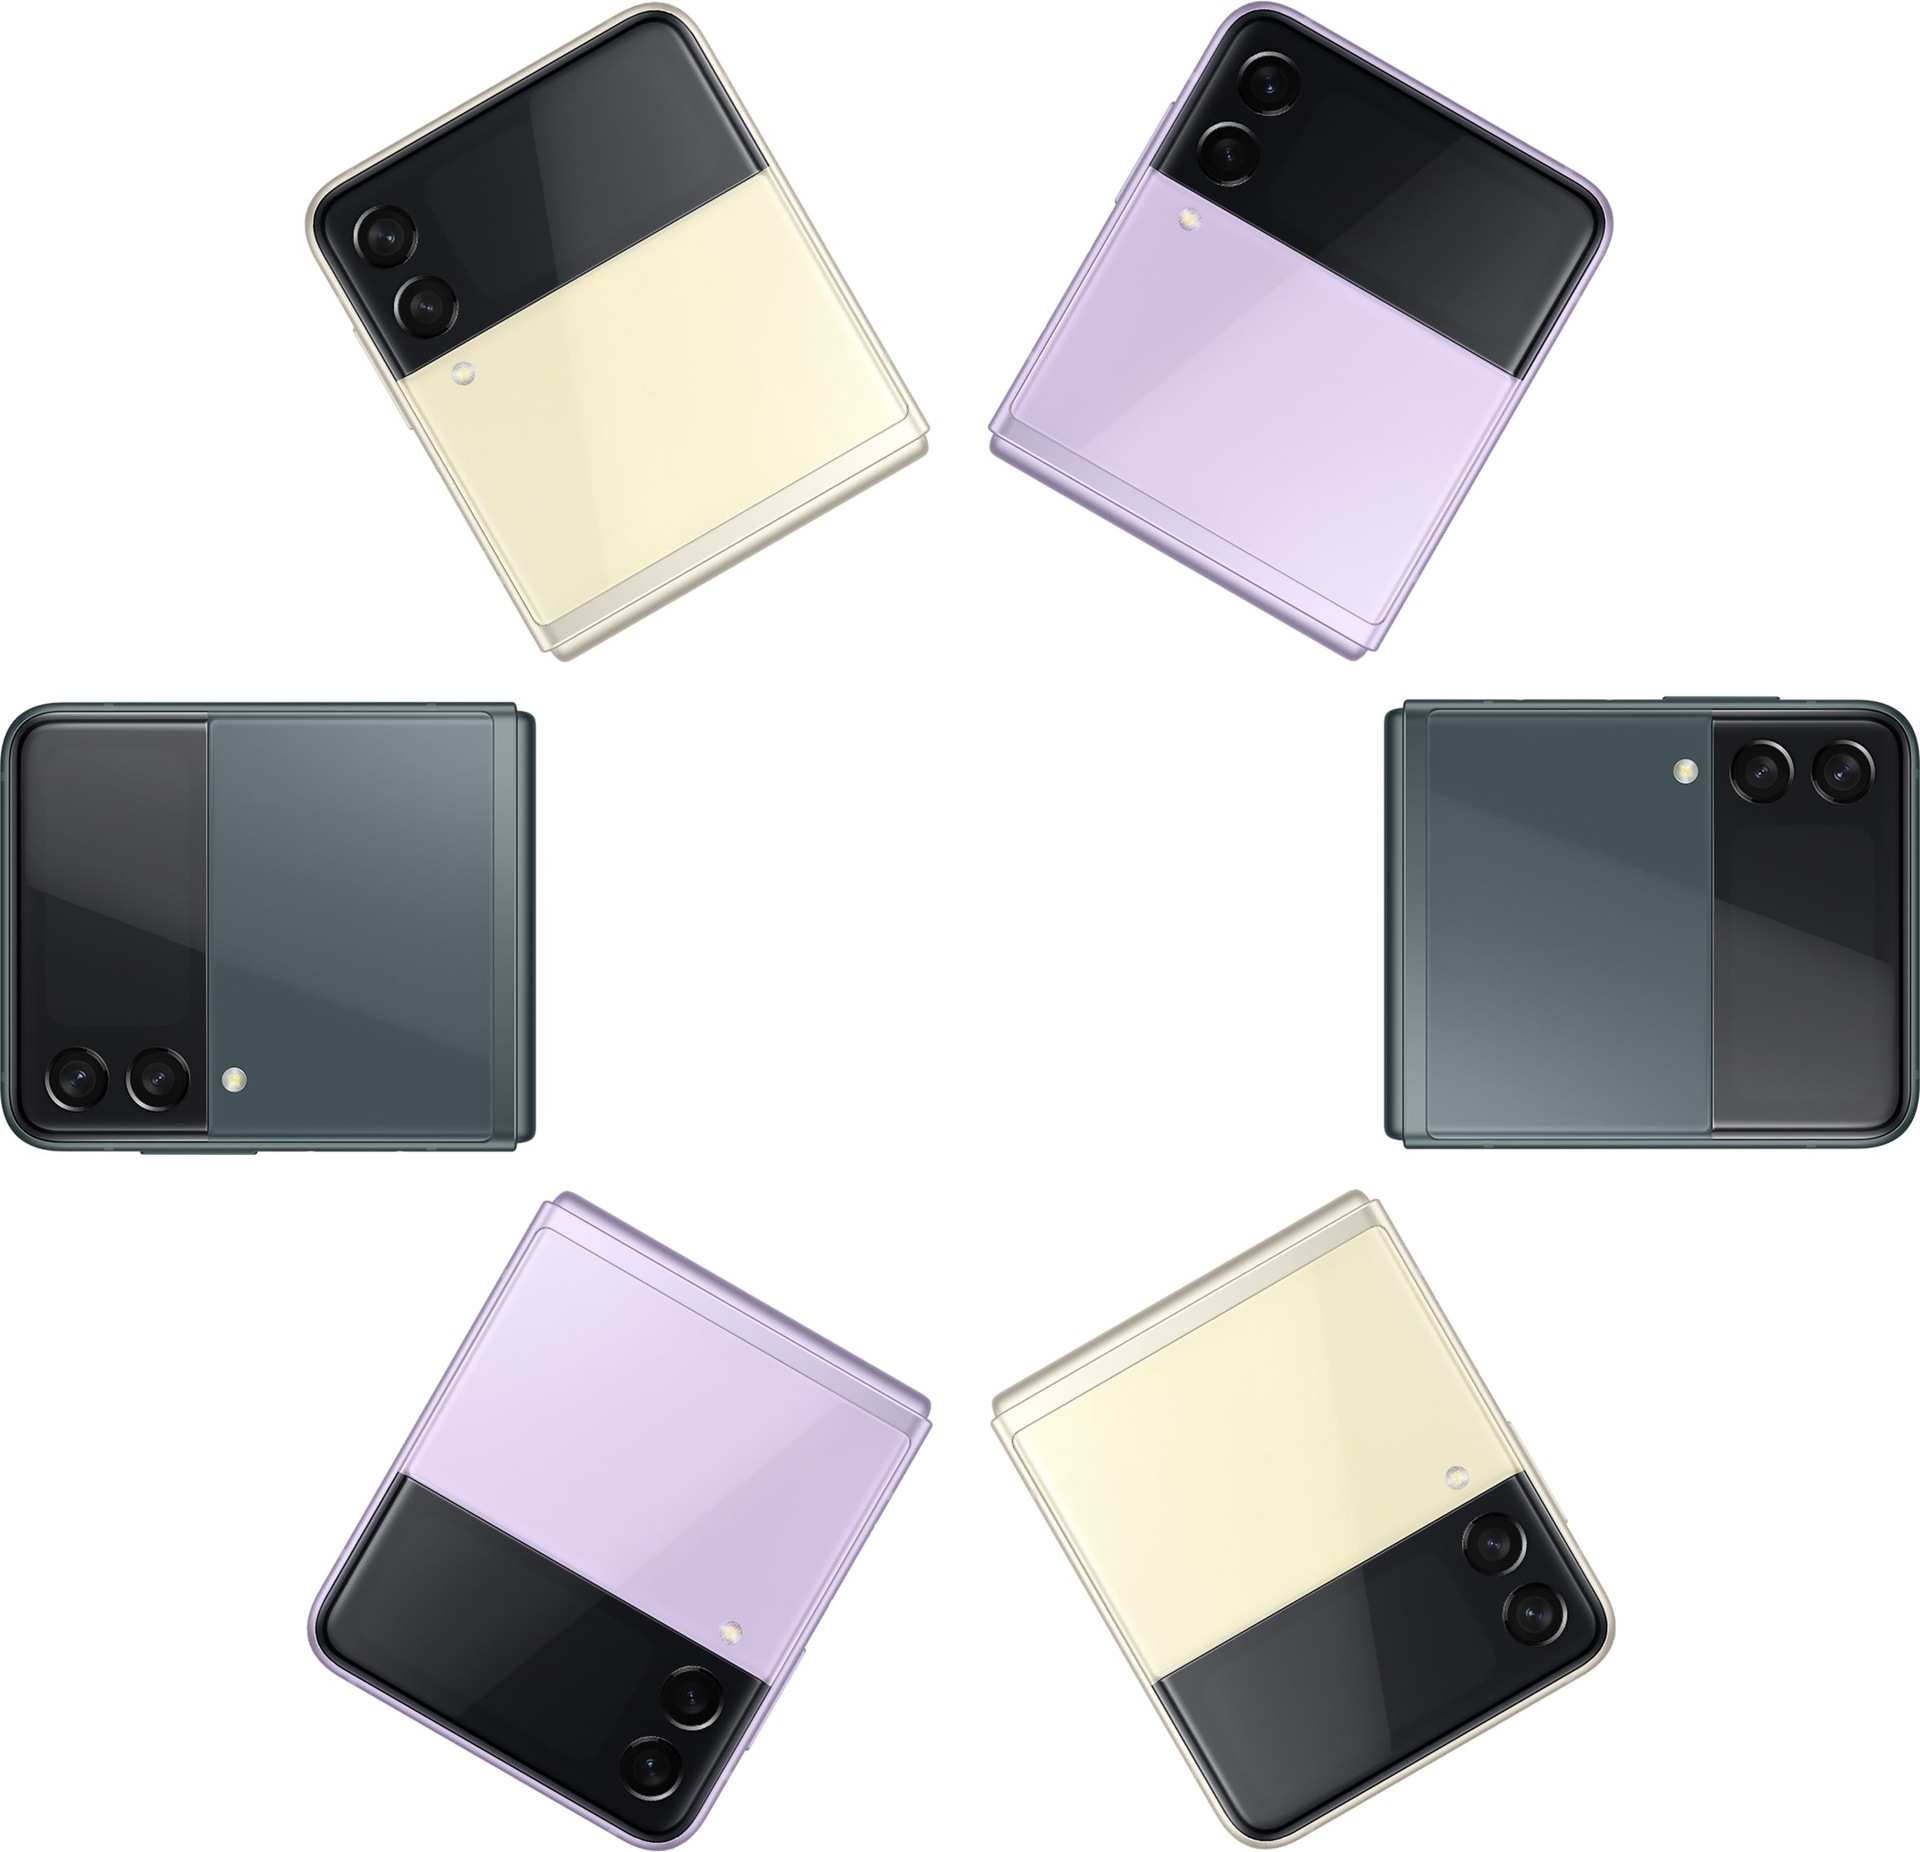 ‎Šest Galaxy Z Flip3 5G telefona, svi su preklopljeni i prikazuju prednju masku. Dva u krem, dva u boji lavande i dva u zelenoj, svi mijenjaju boje.